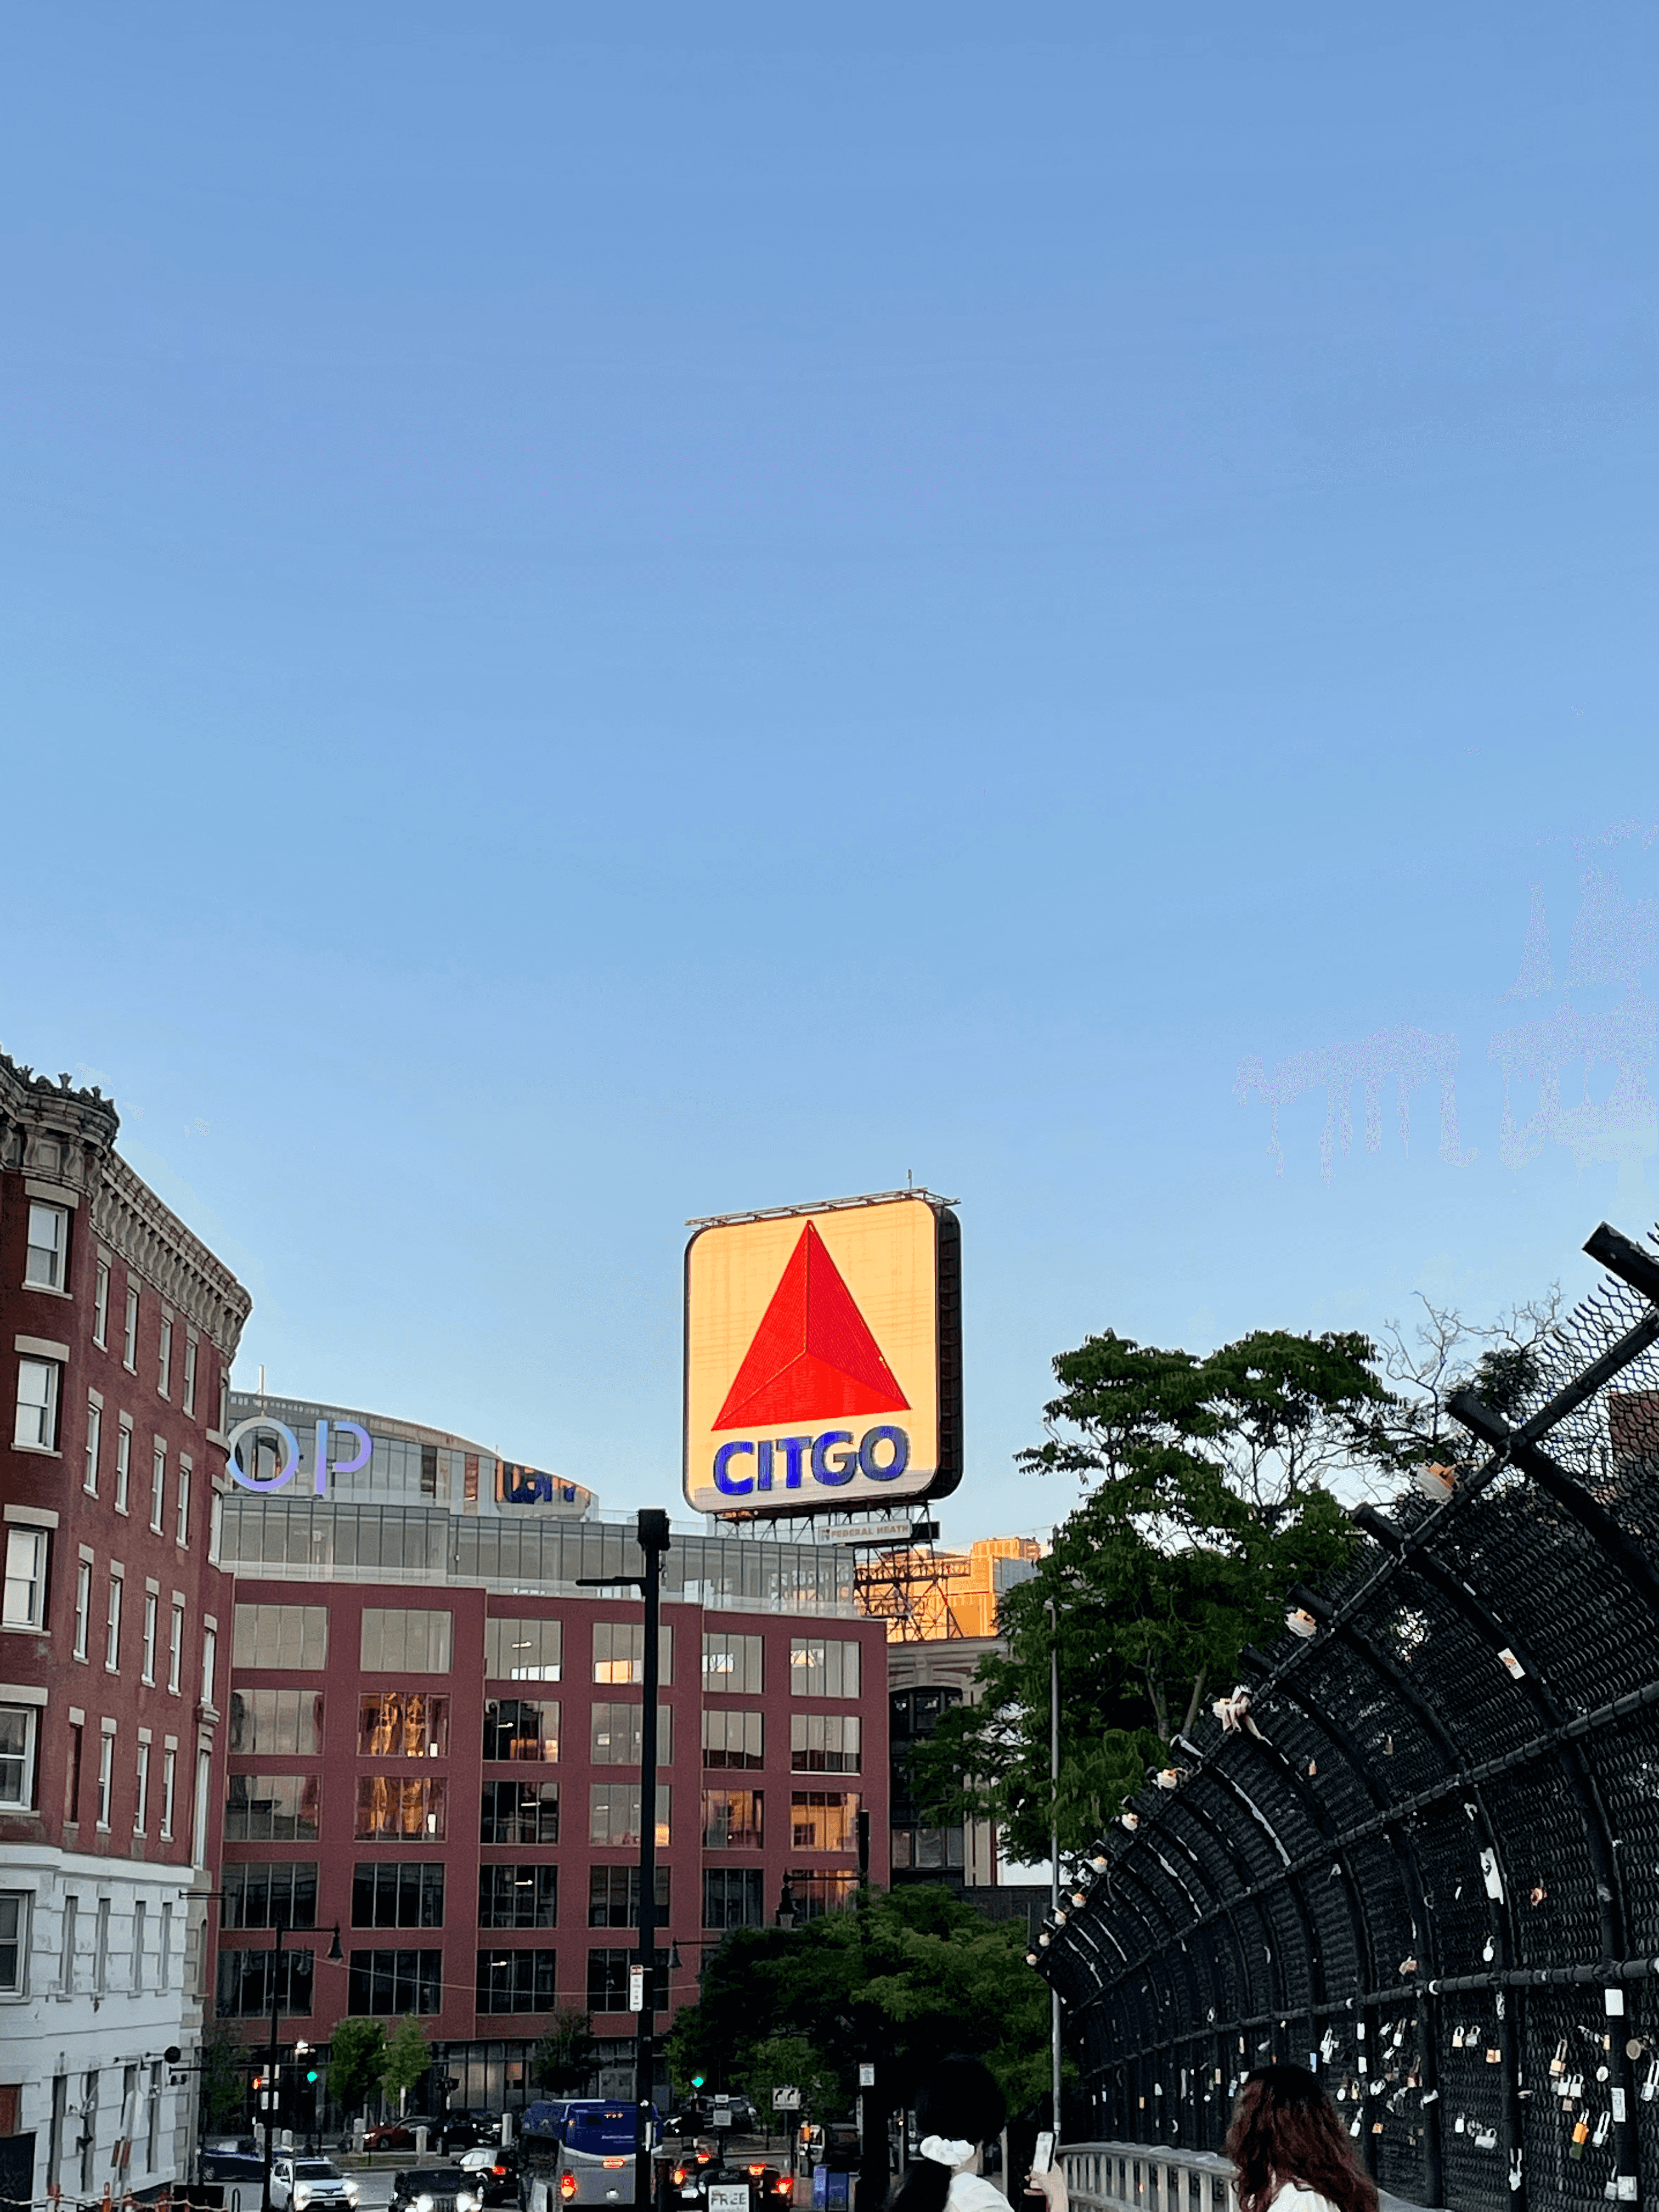 The Citgo sign in Boston